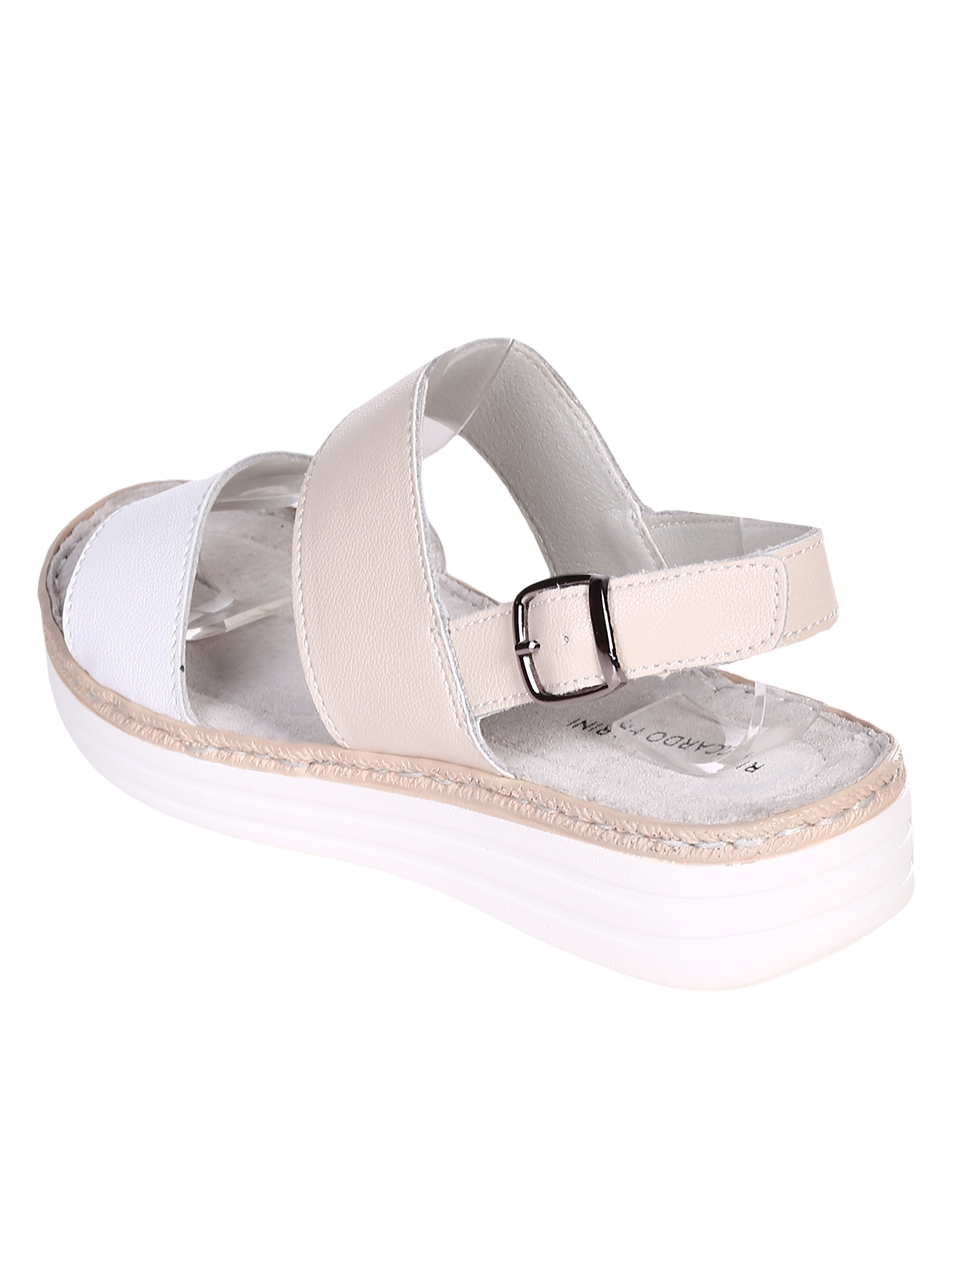 Ежедневни дамски сандали на платформа от естествена кожа 4AF-23167 beige/white